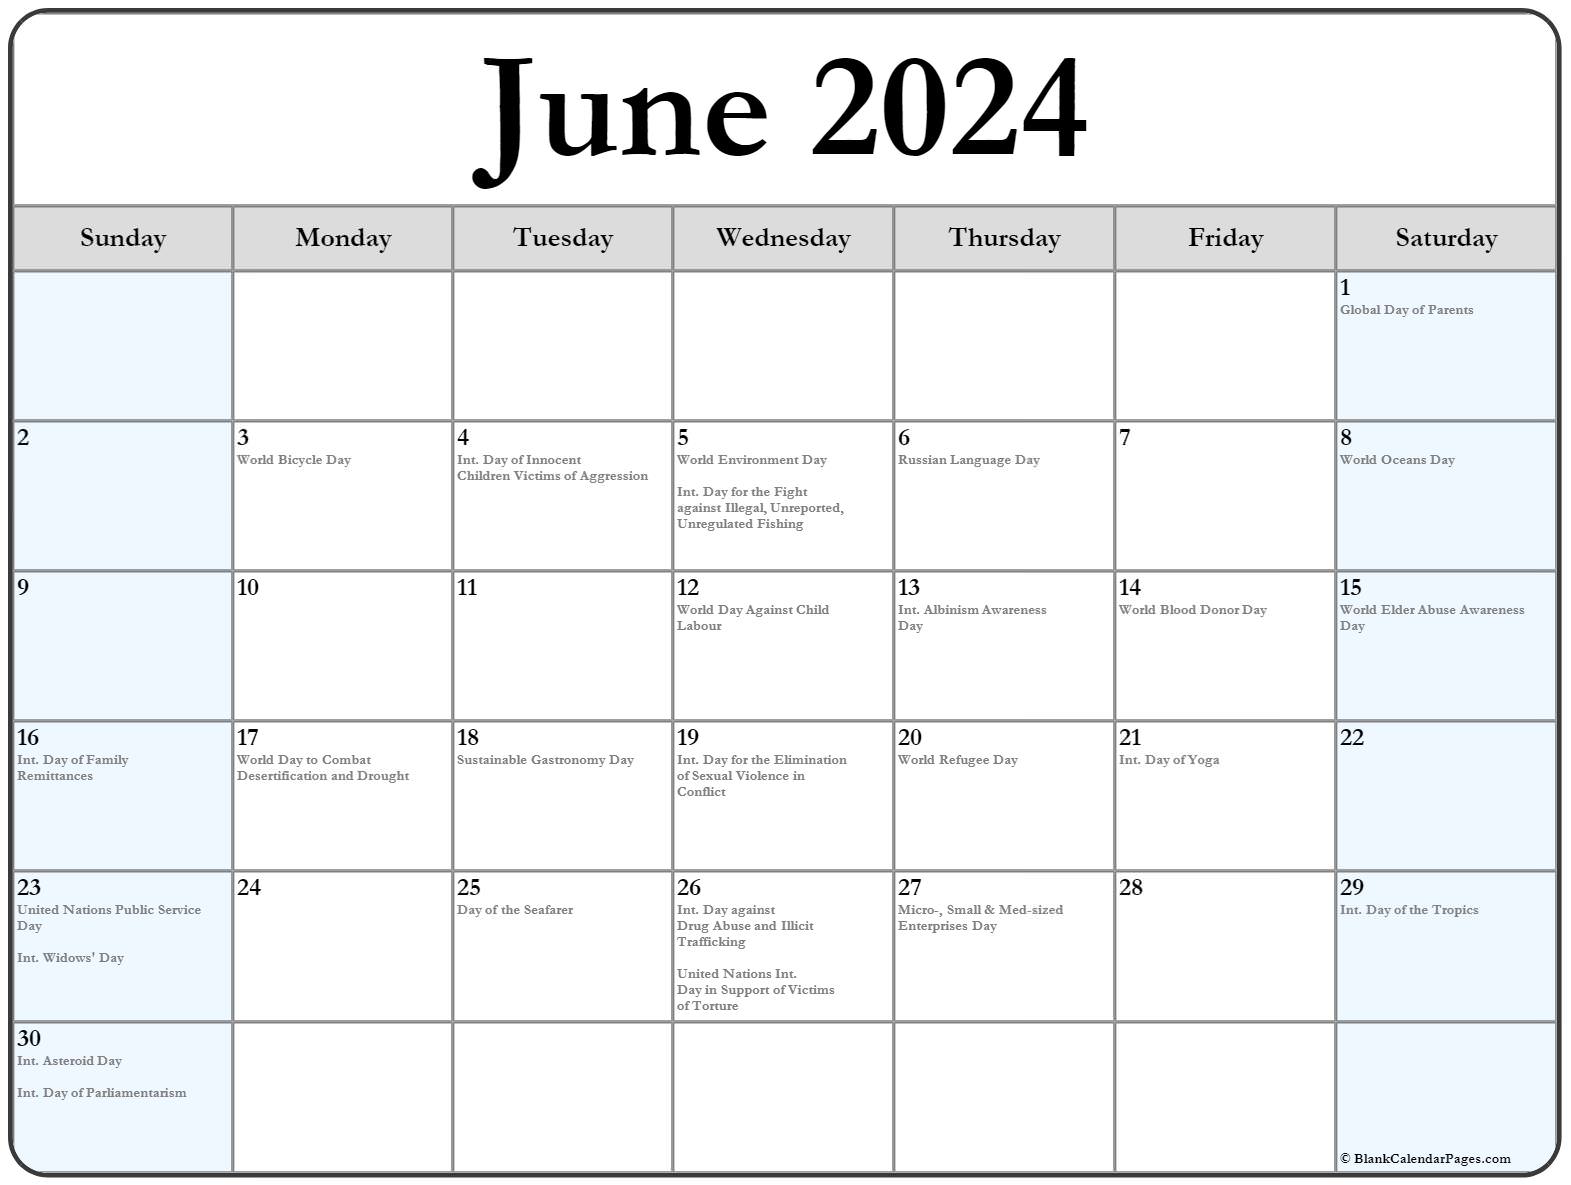 June 2023 Calendar Int Holidays1 